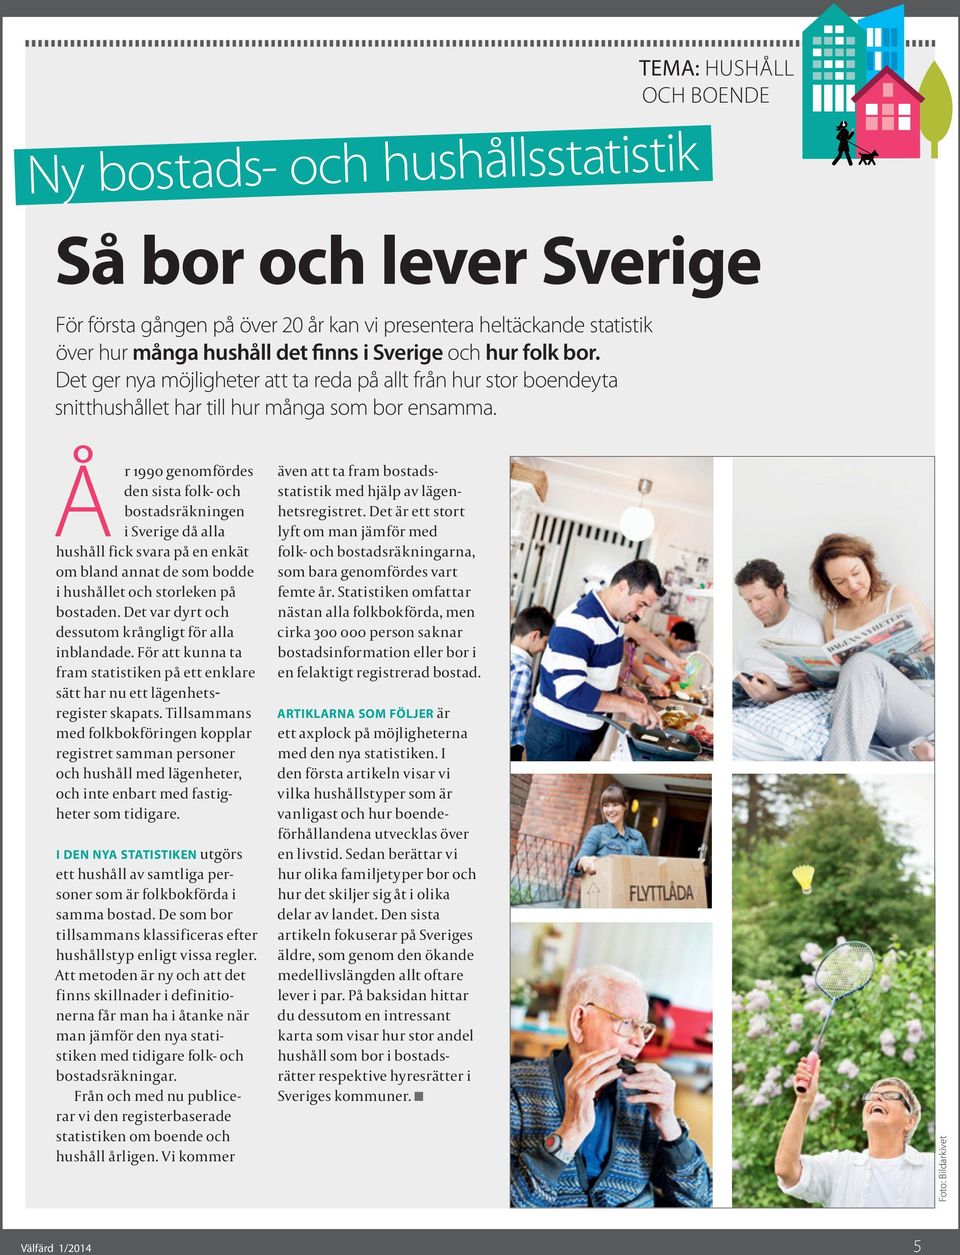 Å r 199 genomfördes den sista folk- och bostadsräkningen i Sverige då alla hushåll fick svara på en enkät om bland annat de som bodde i hushållet och storleken på bostaden.